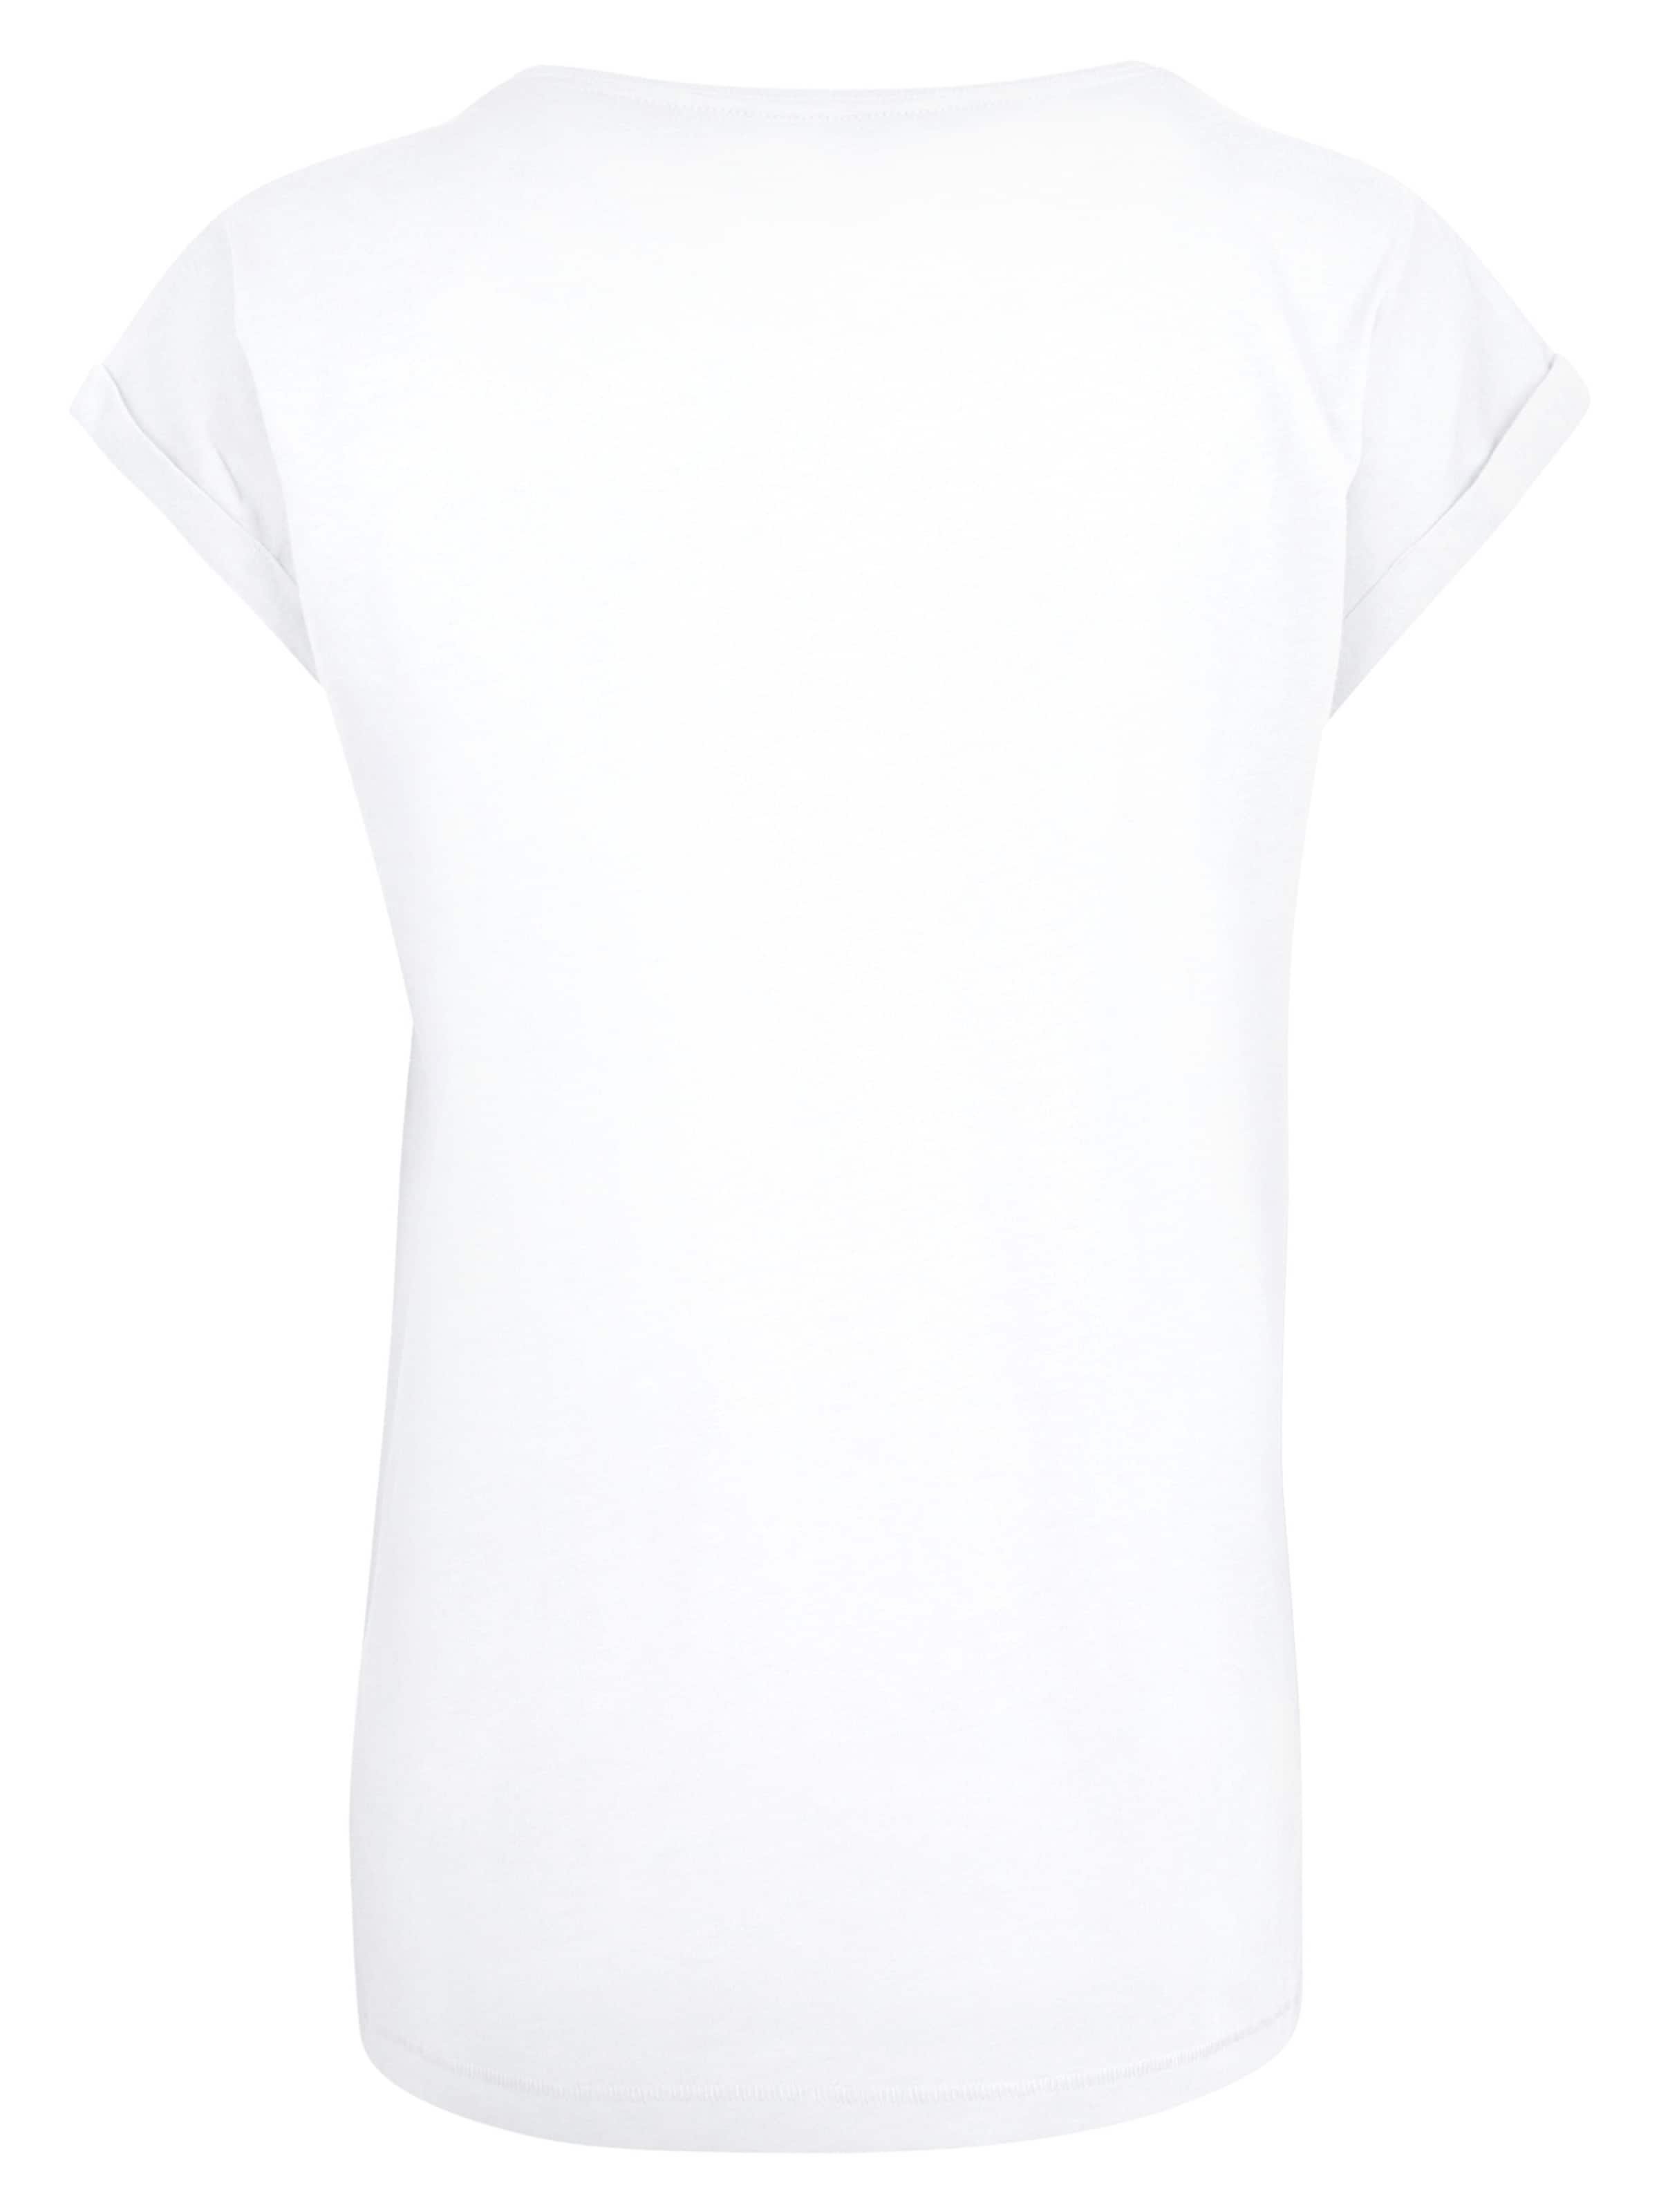 Frauen Shirts & Tops F4NT4STIC T-Shirt in Weiß - YN97978